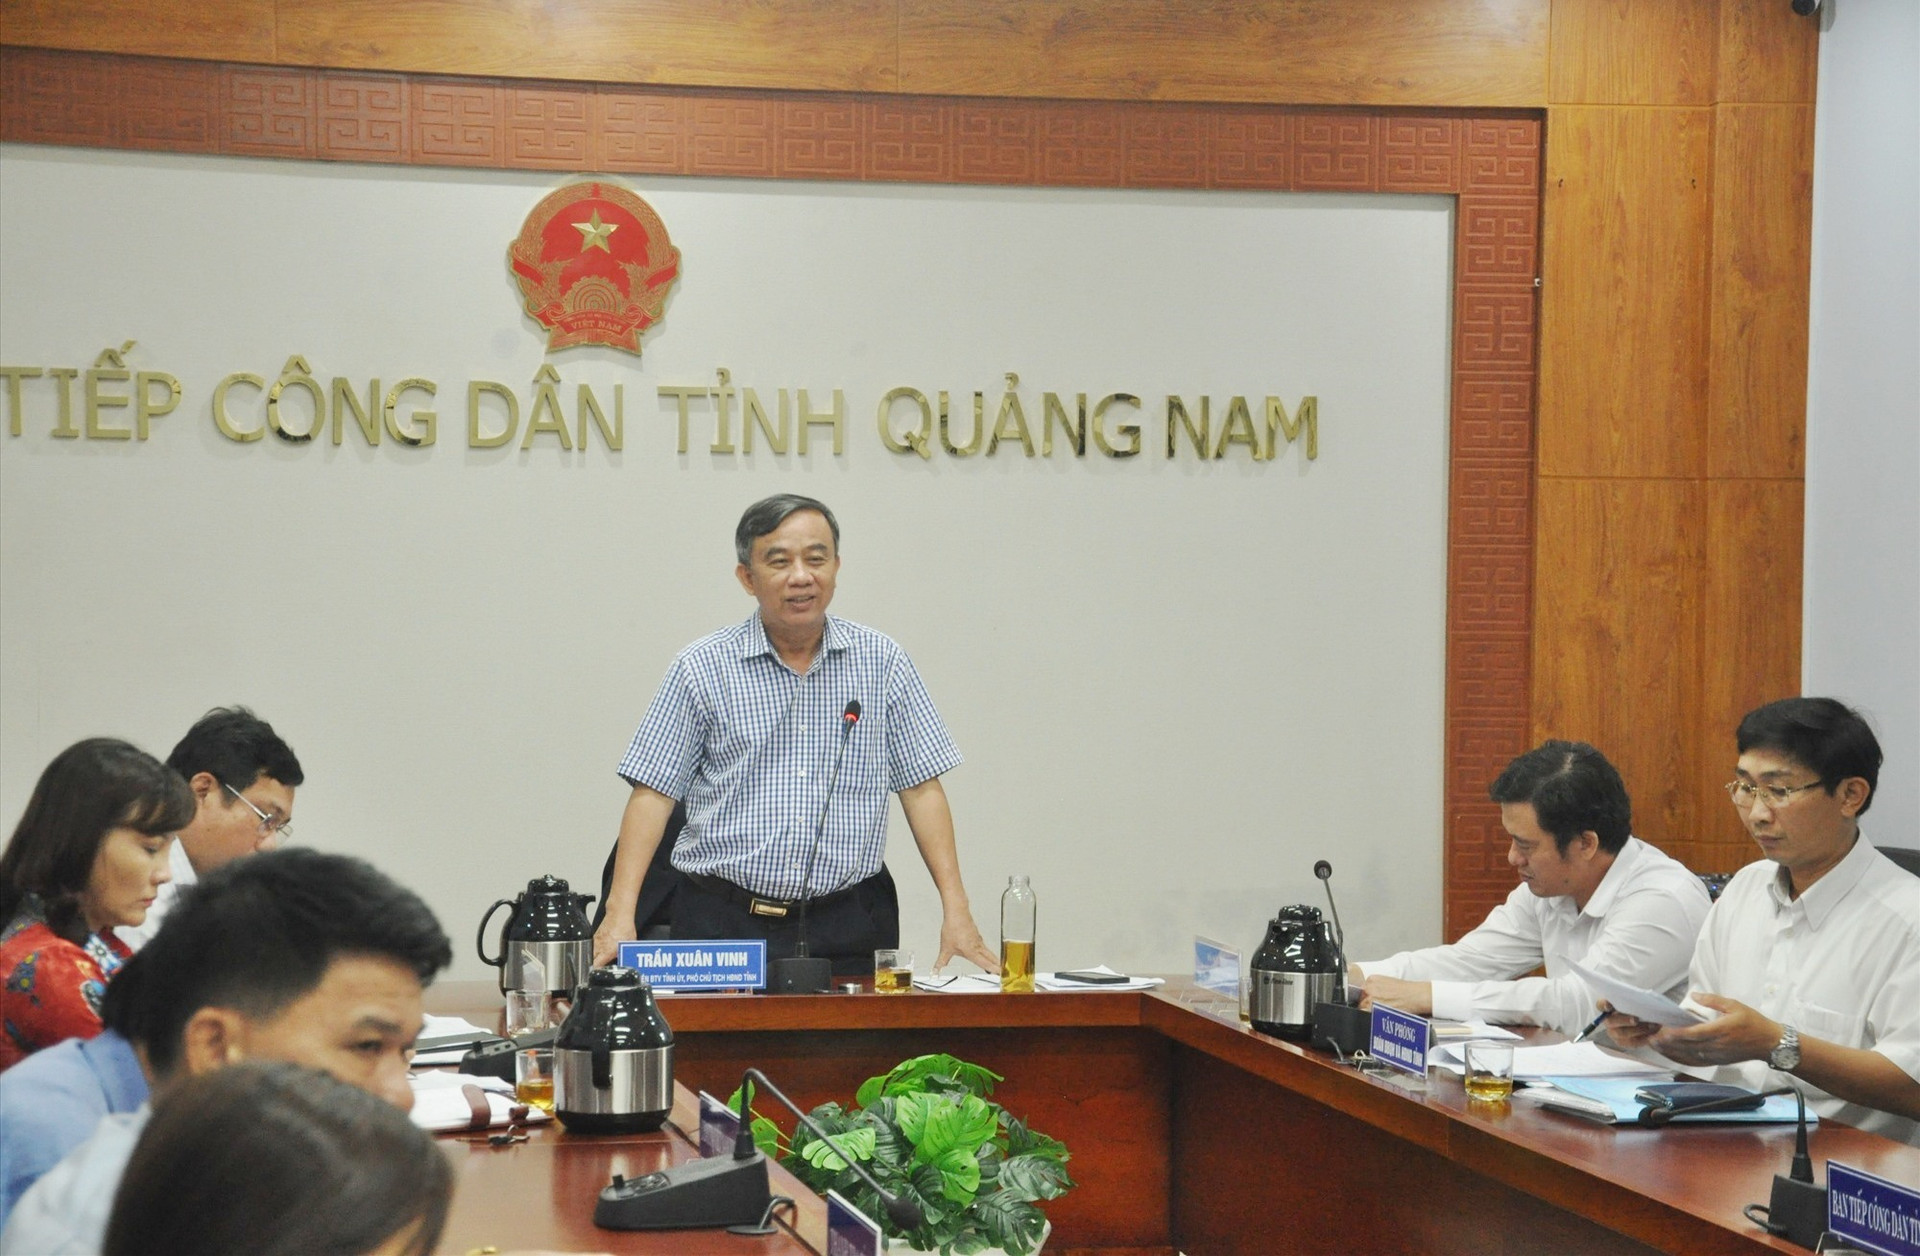 Phó Chủ tịch HĐND tỉnh Trần Xuân Vinh cho rằng xử lý vụ việc có lý có tình trên cơ sở quy định của pháp luật nhưng cần xét yếu tố lịch sử. Ảnh: X.P